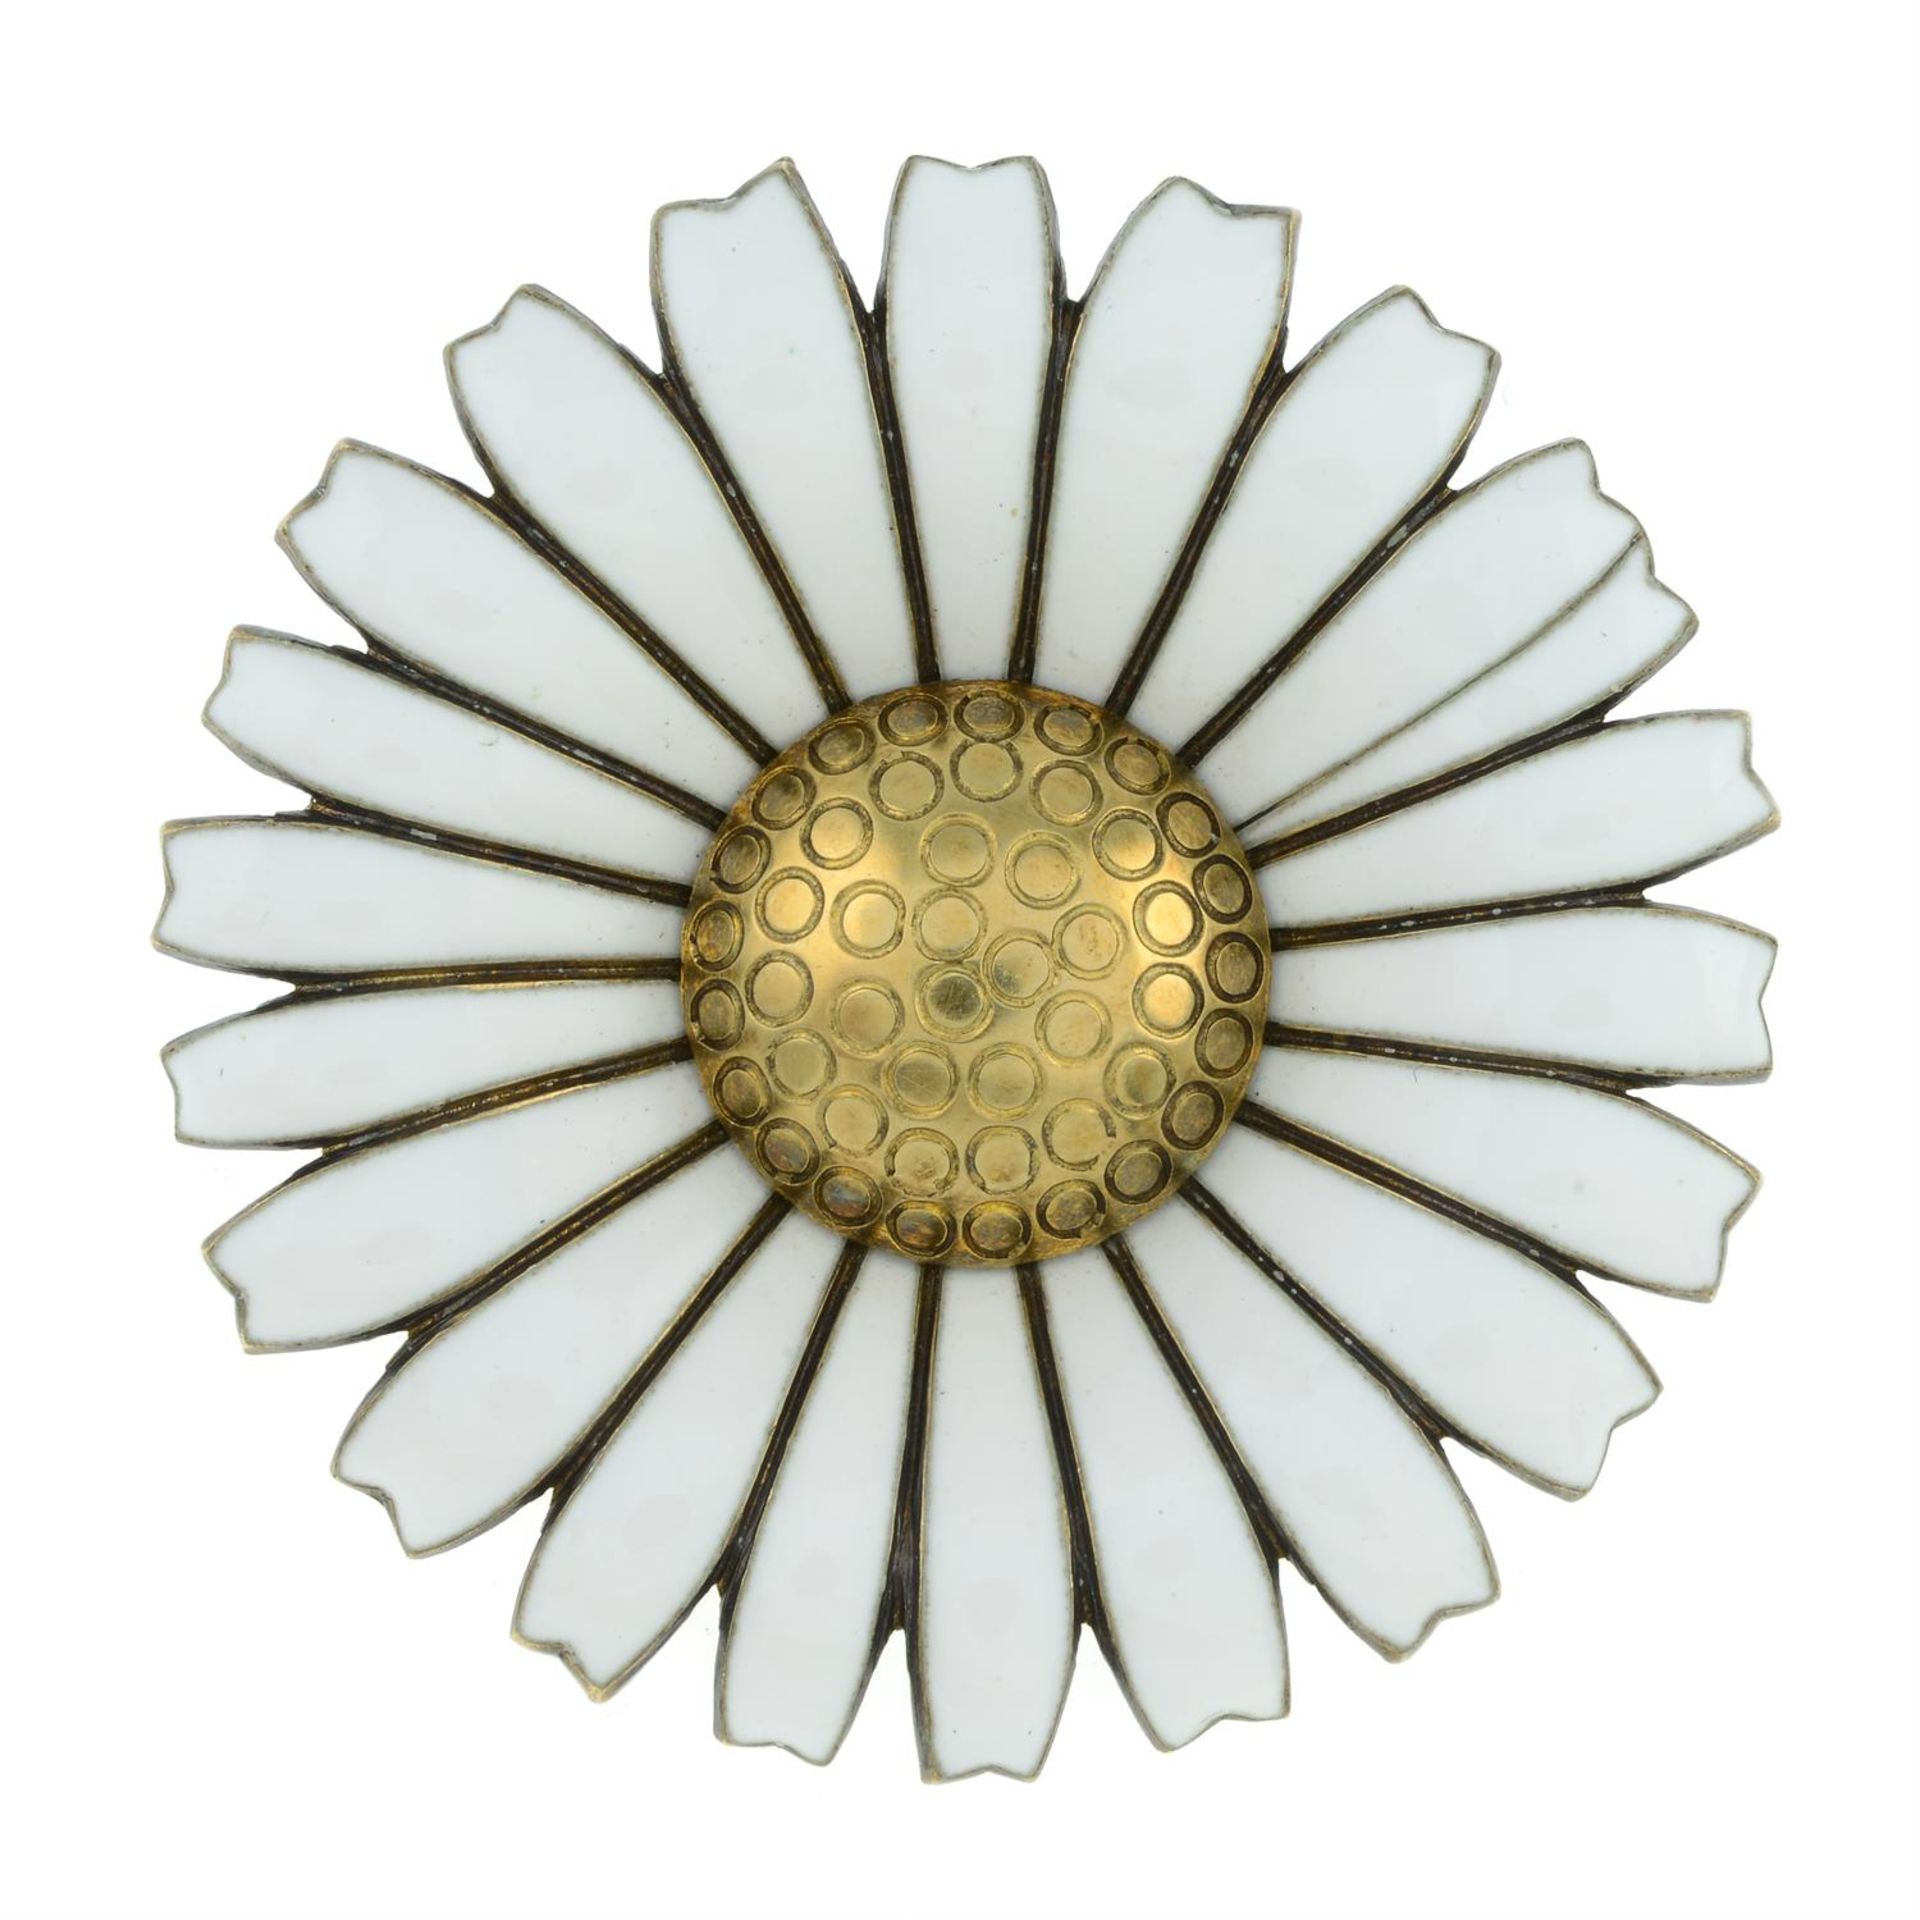 Enamel daisy brooch, by Anton Michelsen